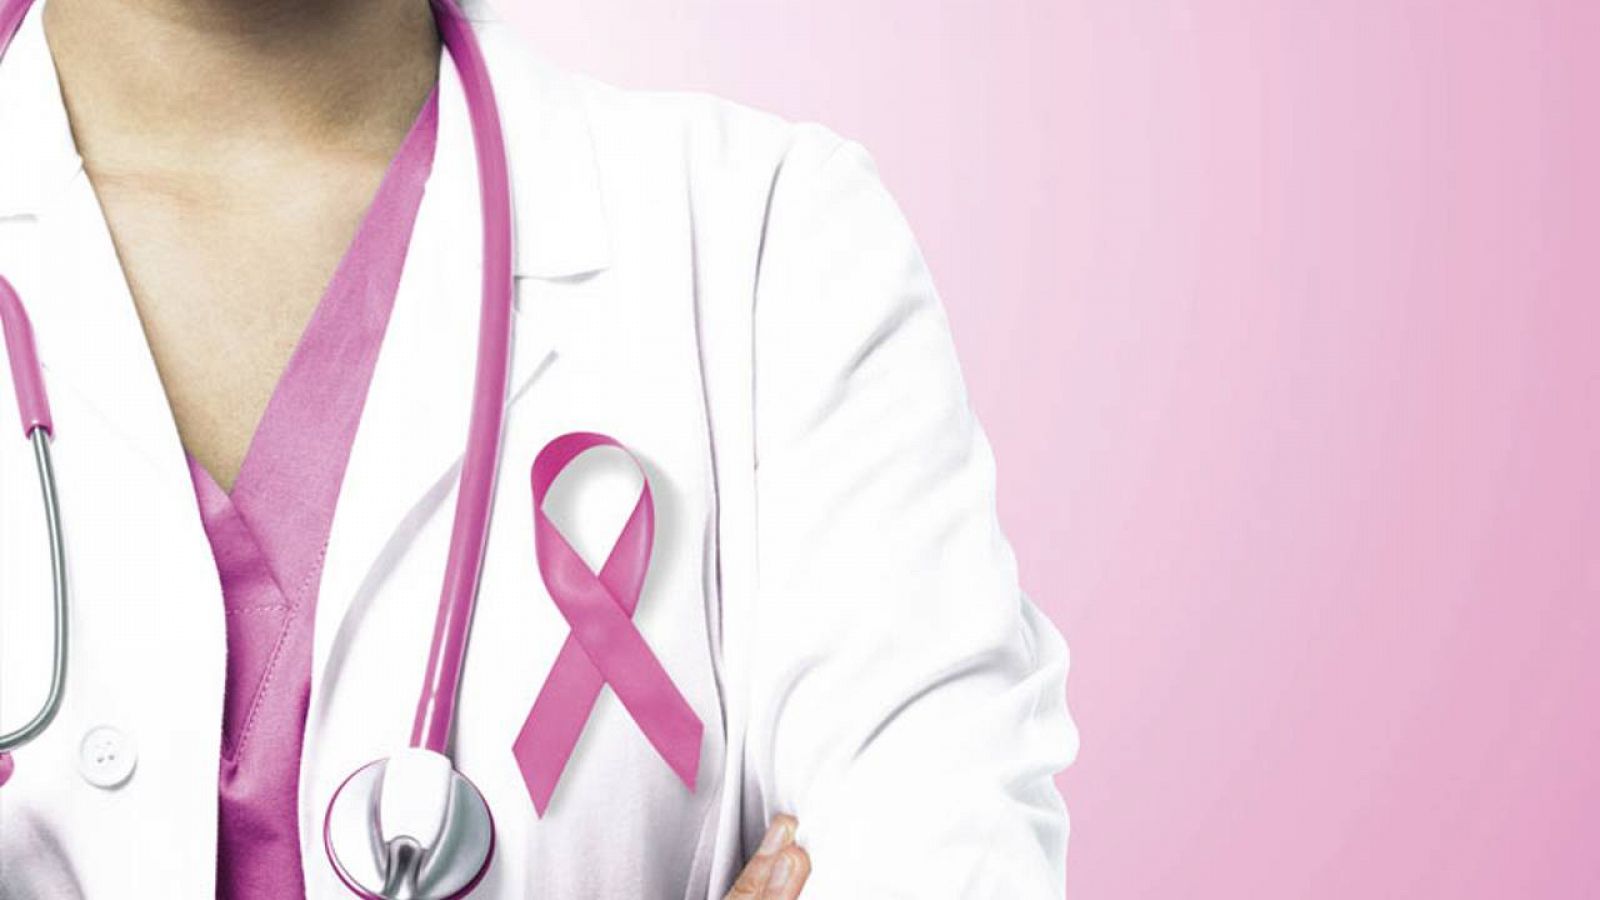 La detecció precoç del càncer de mama és clau per detectar-lo en les etapes inicials